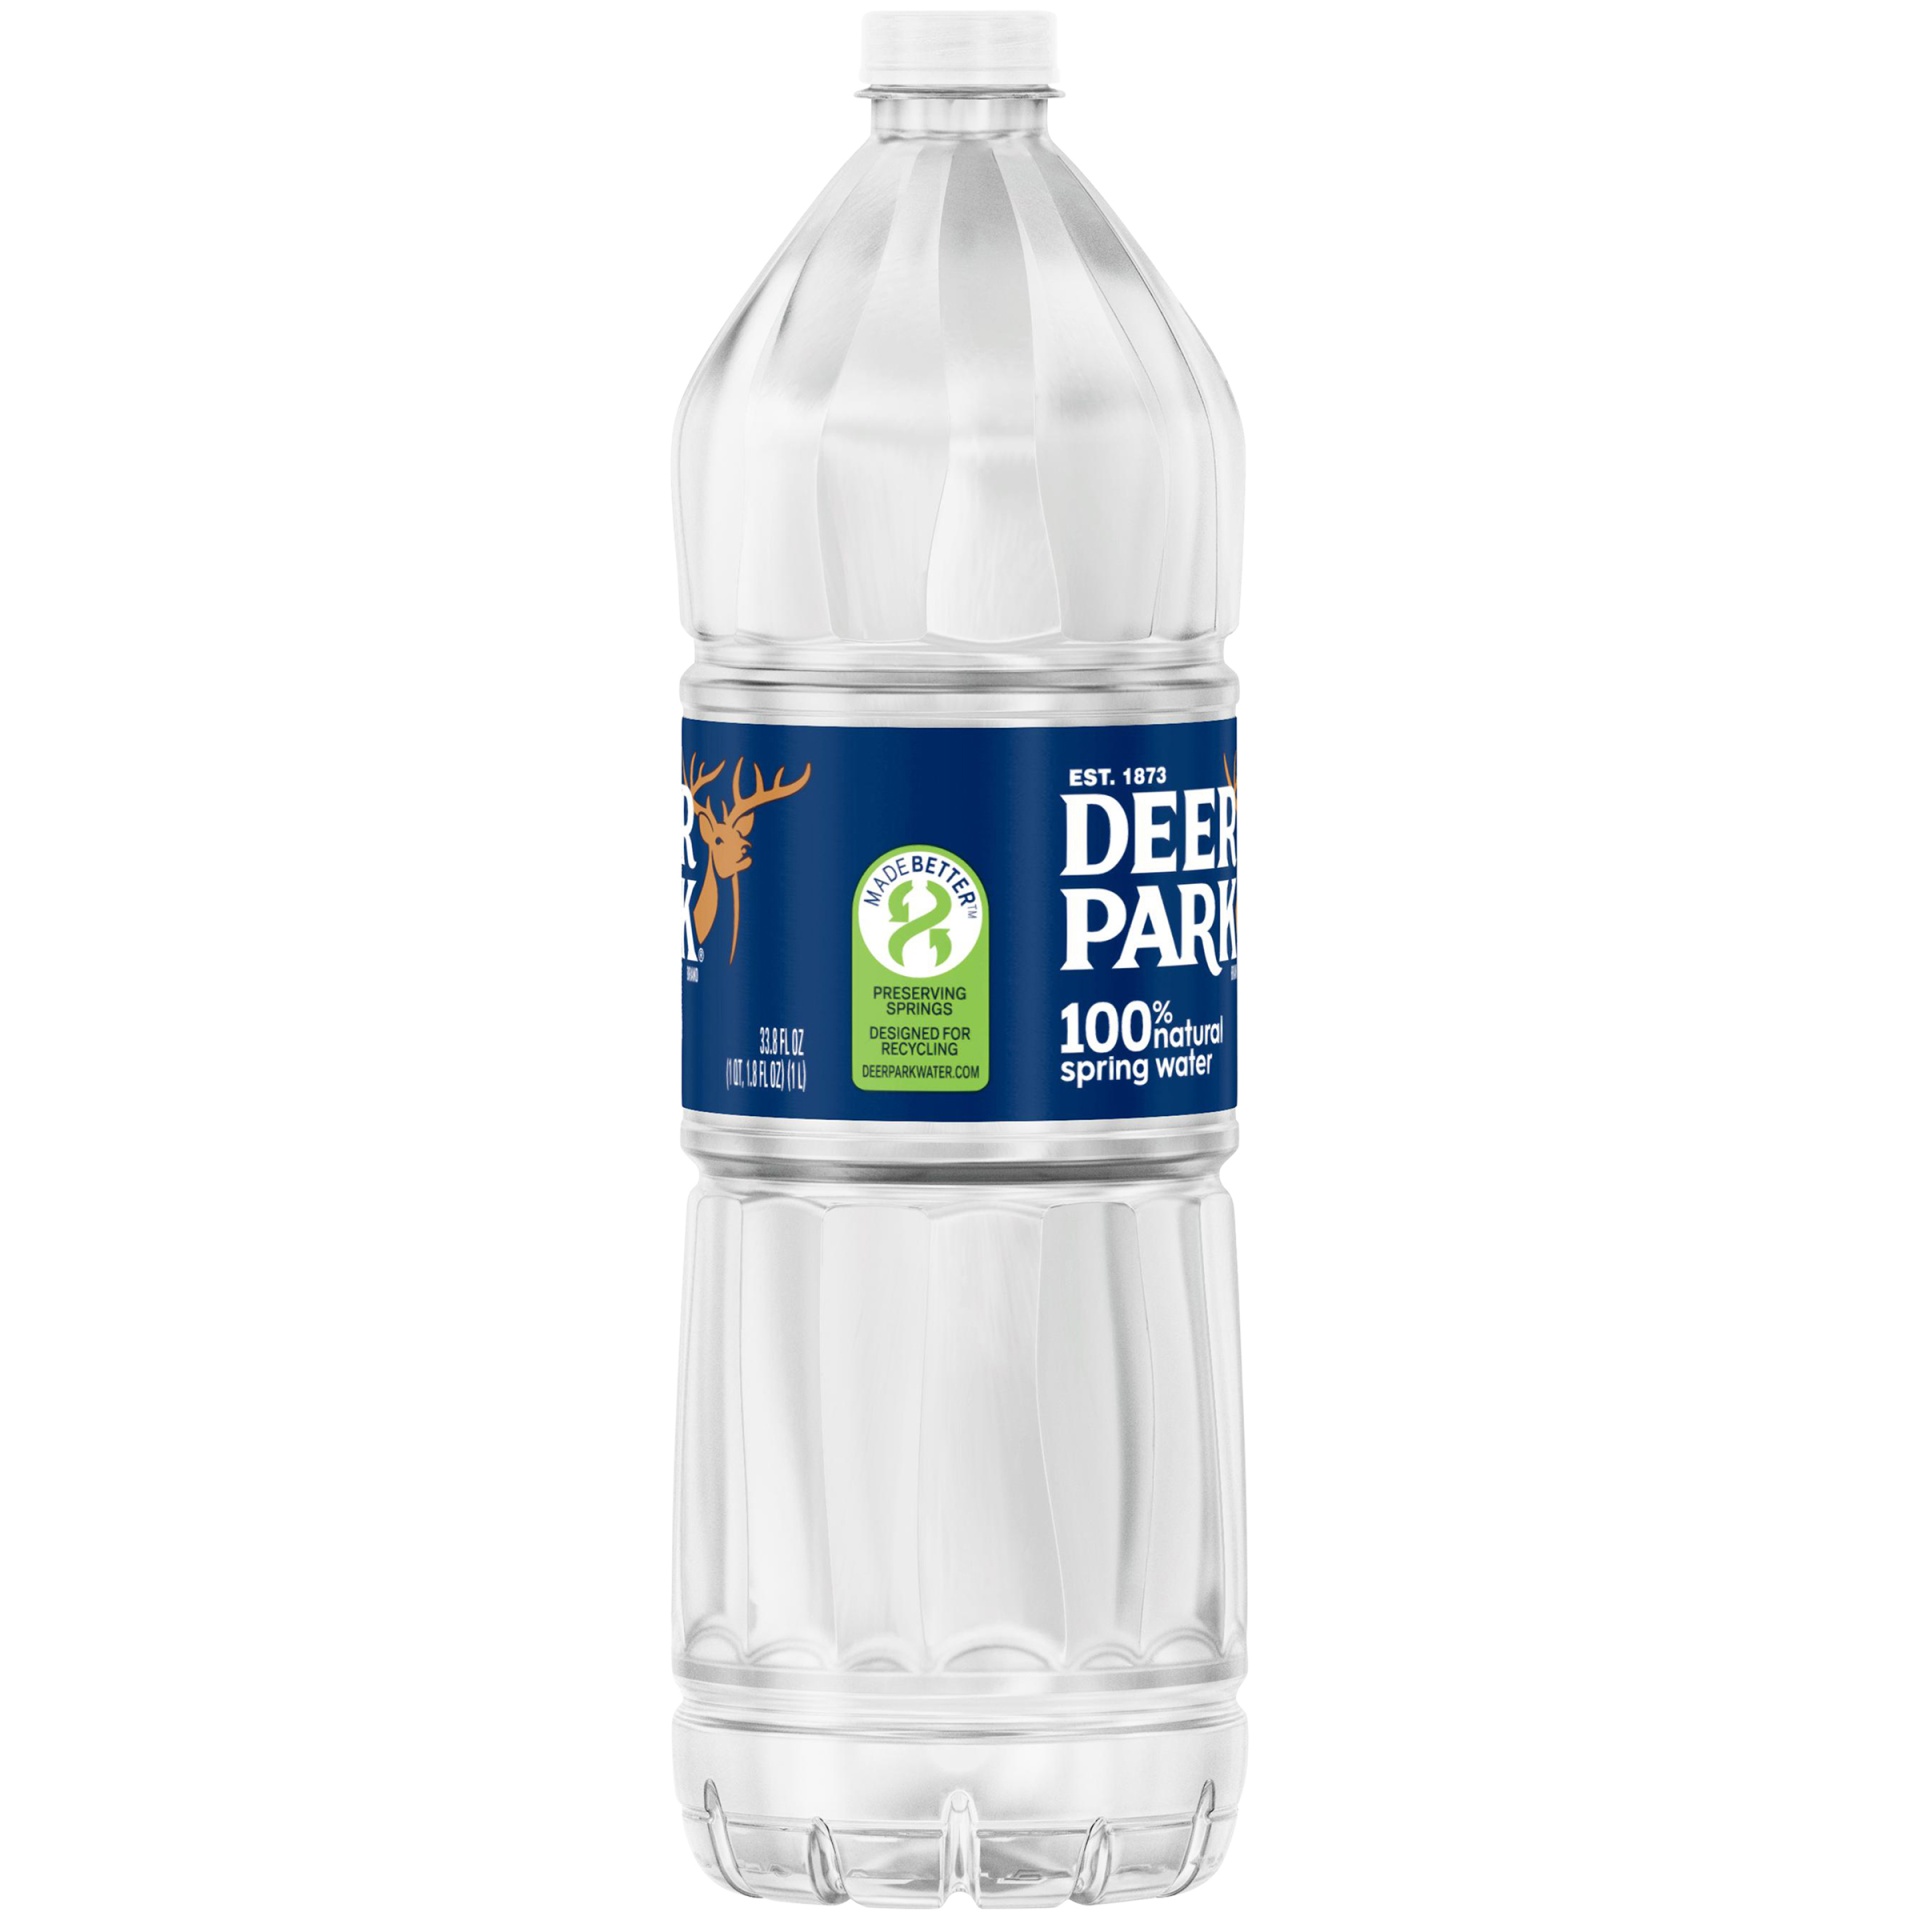 slide 3 of 4, Deer Park Brand 100% Natural Spring Water Plastic Bottle, 33.8 oz